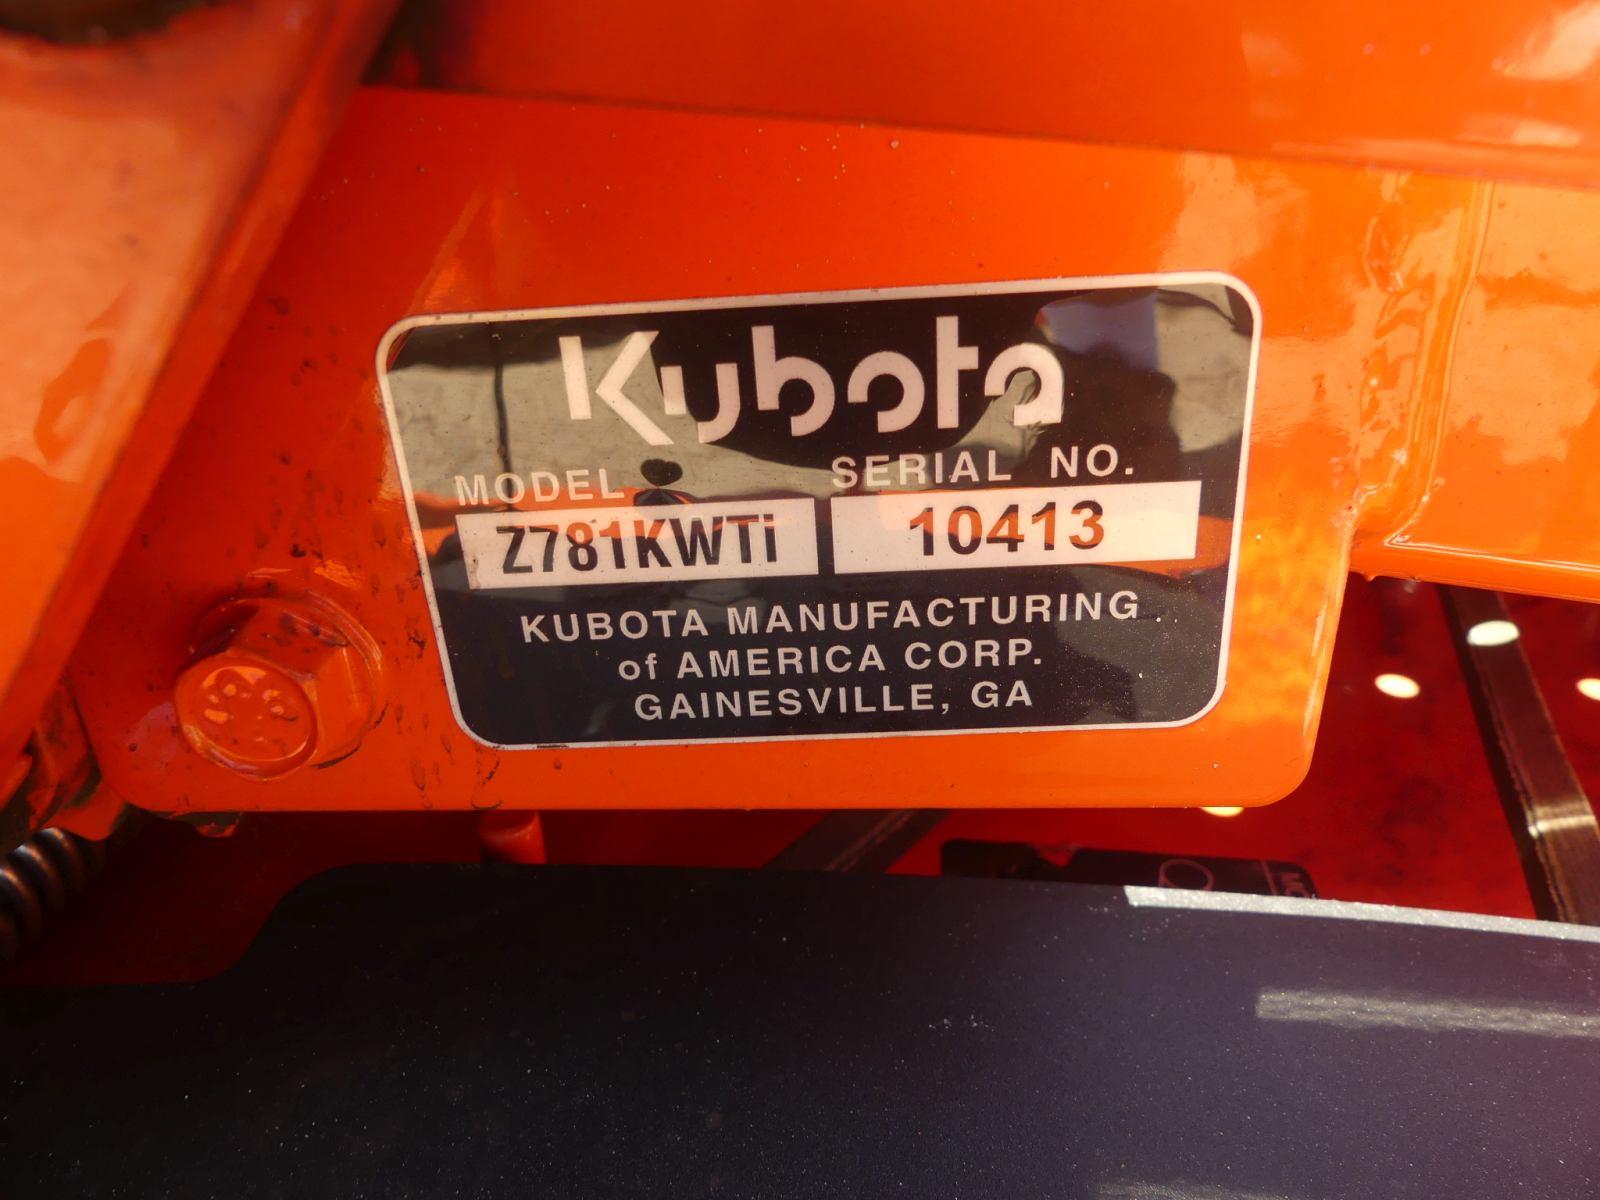 Kubota Z781KWTi Zero-turn Mower, s/n 10413: Kawasaki Gas Eng., 60" Cut, Met